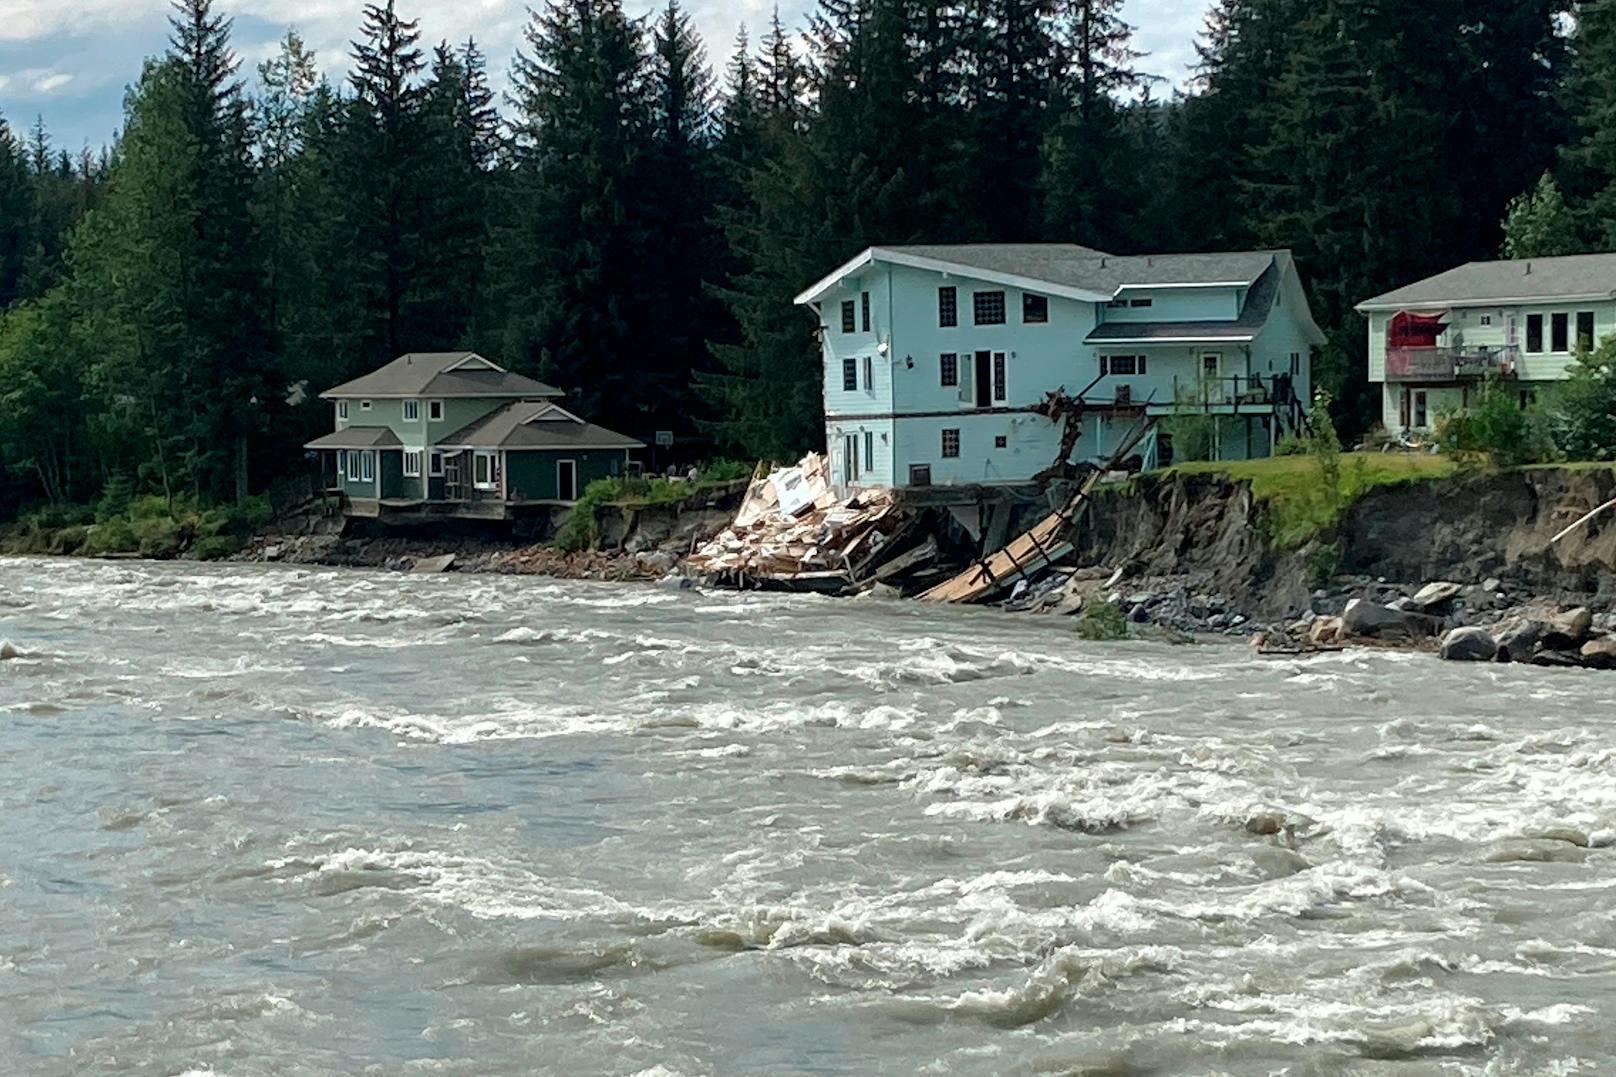 Video zeigt, wie Haus kollabiert und in Fluss stürzt